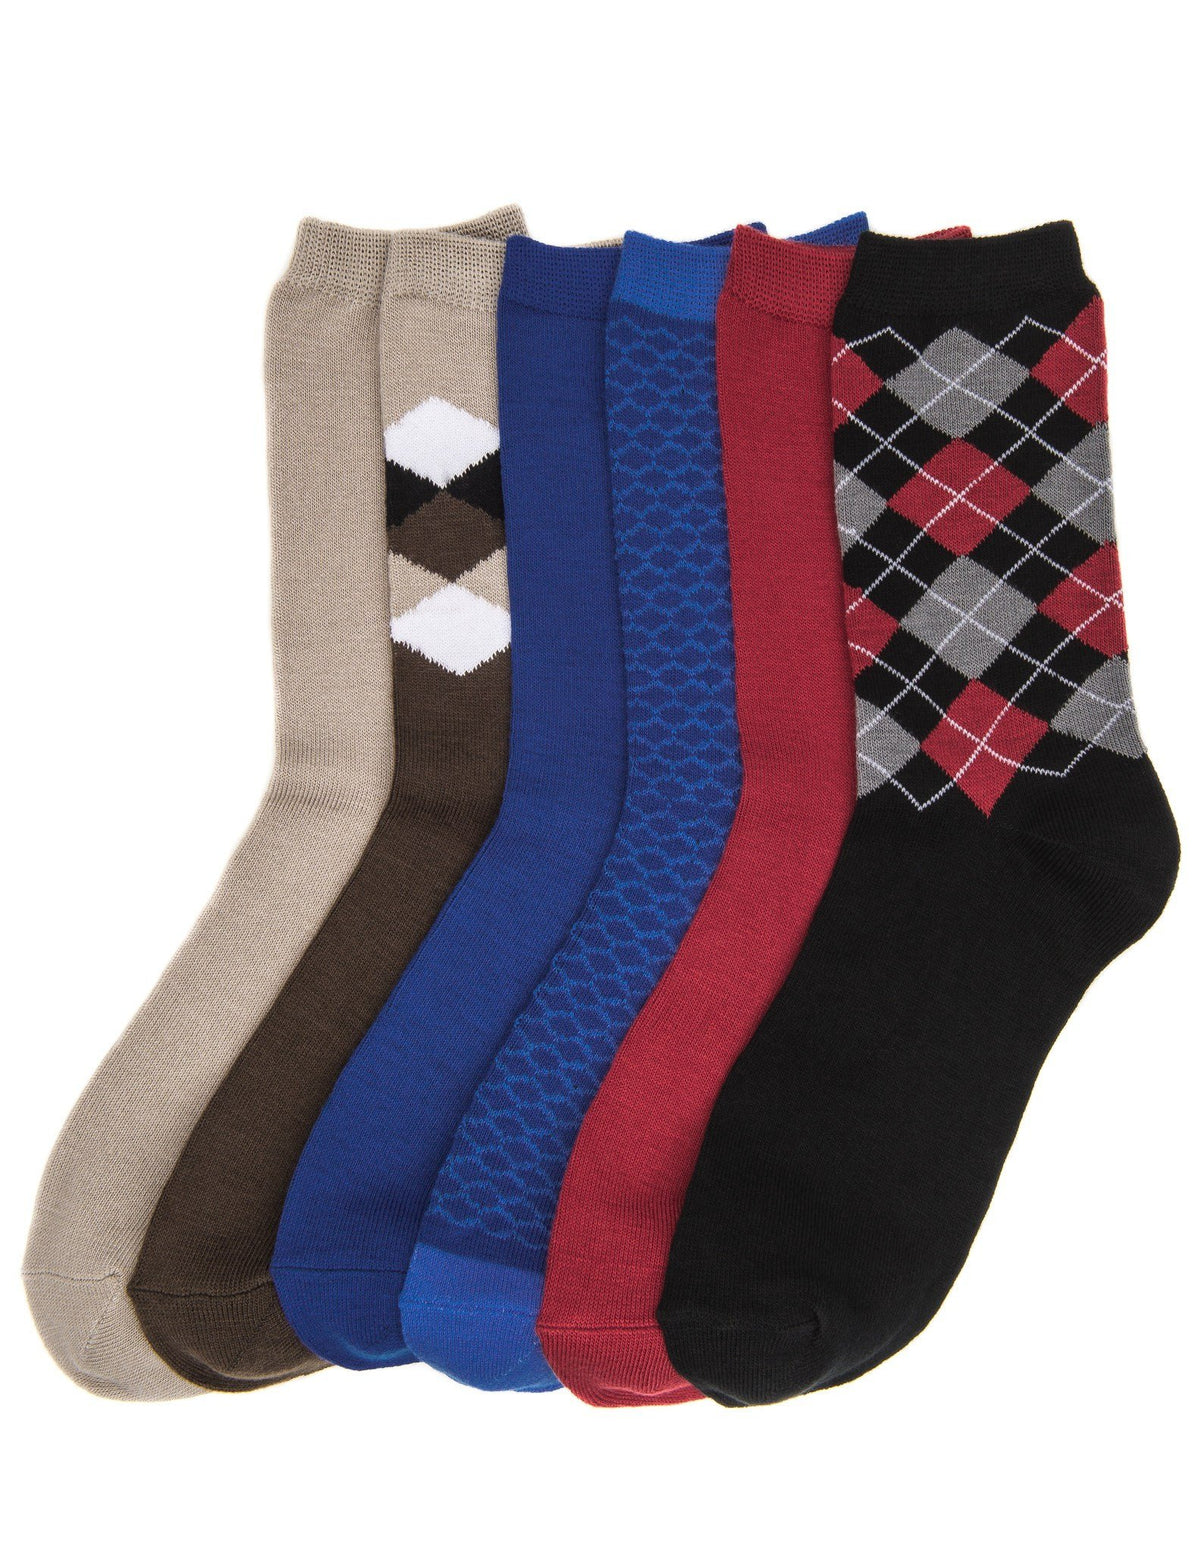 Women's Soft Premium Crew Socks - 6 Pairs - Set 6